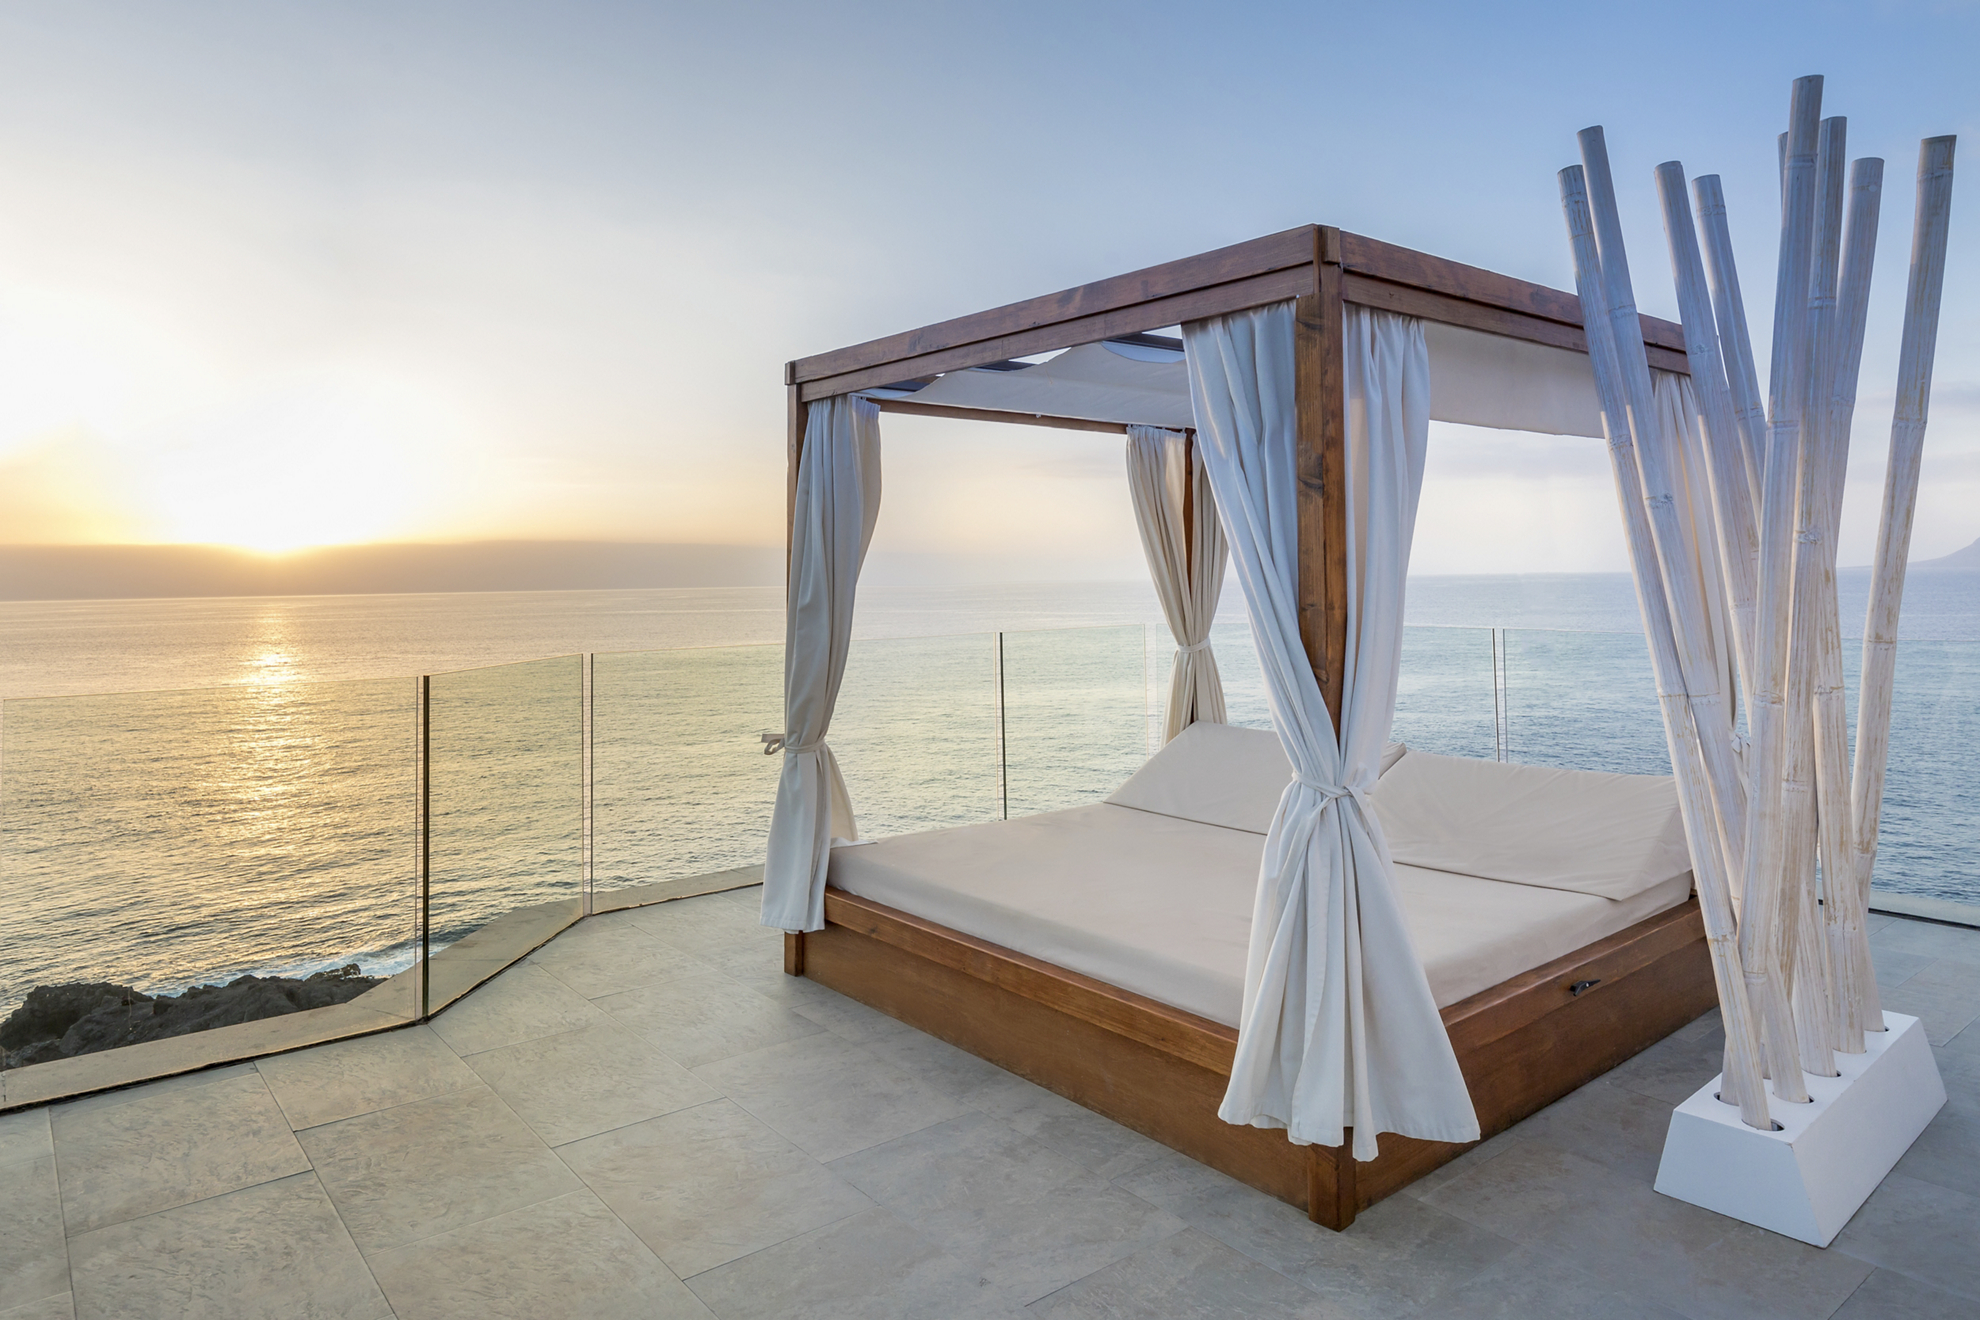 Babymoon-Urlaubsziele: balinesisches Bett auf hoch gelegener Terrasse mit Blick auf den Atlantik.